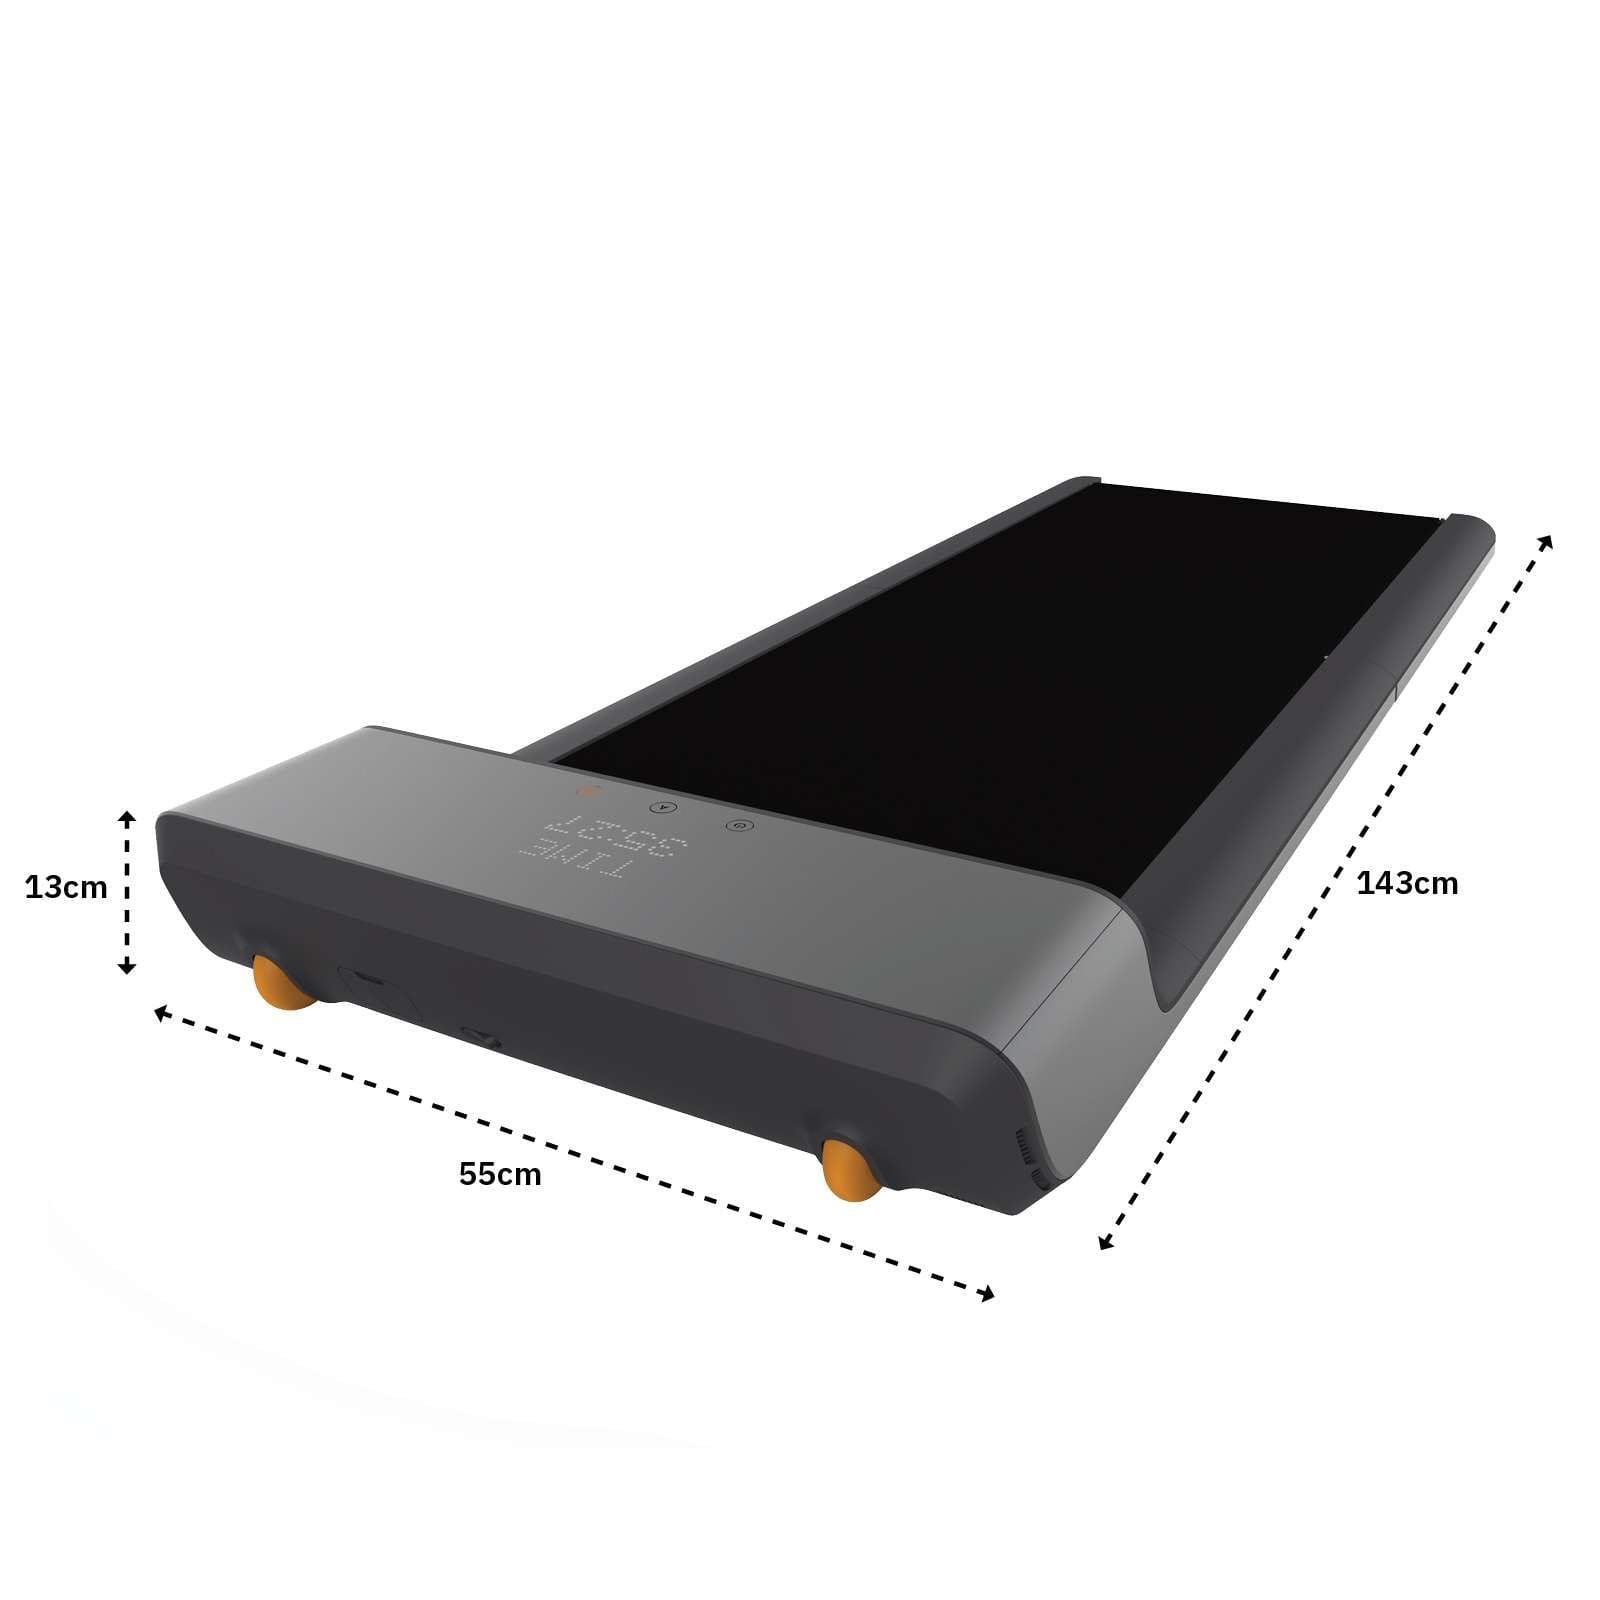 WalkSlim WalkPad 630 Treadmill - Dimensions